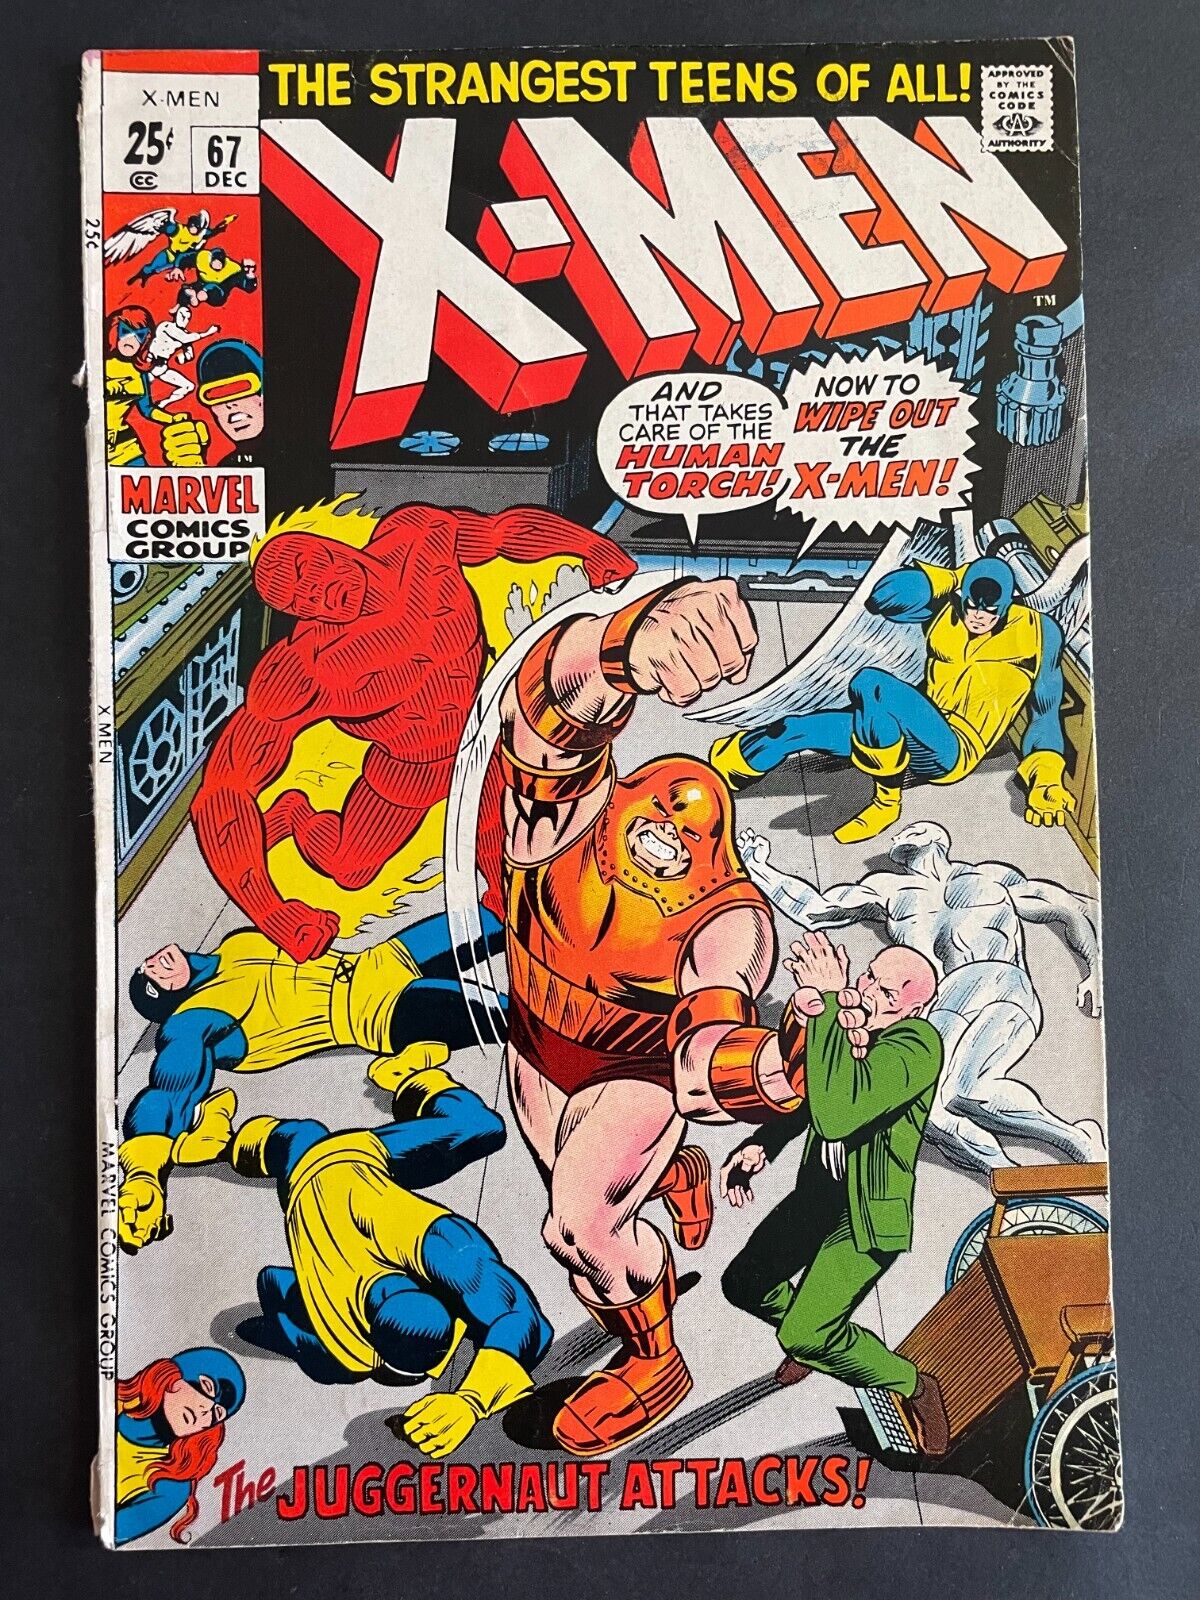 X-Men #67 - Juggernaut Marvel 1970 Comics